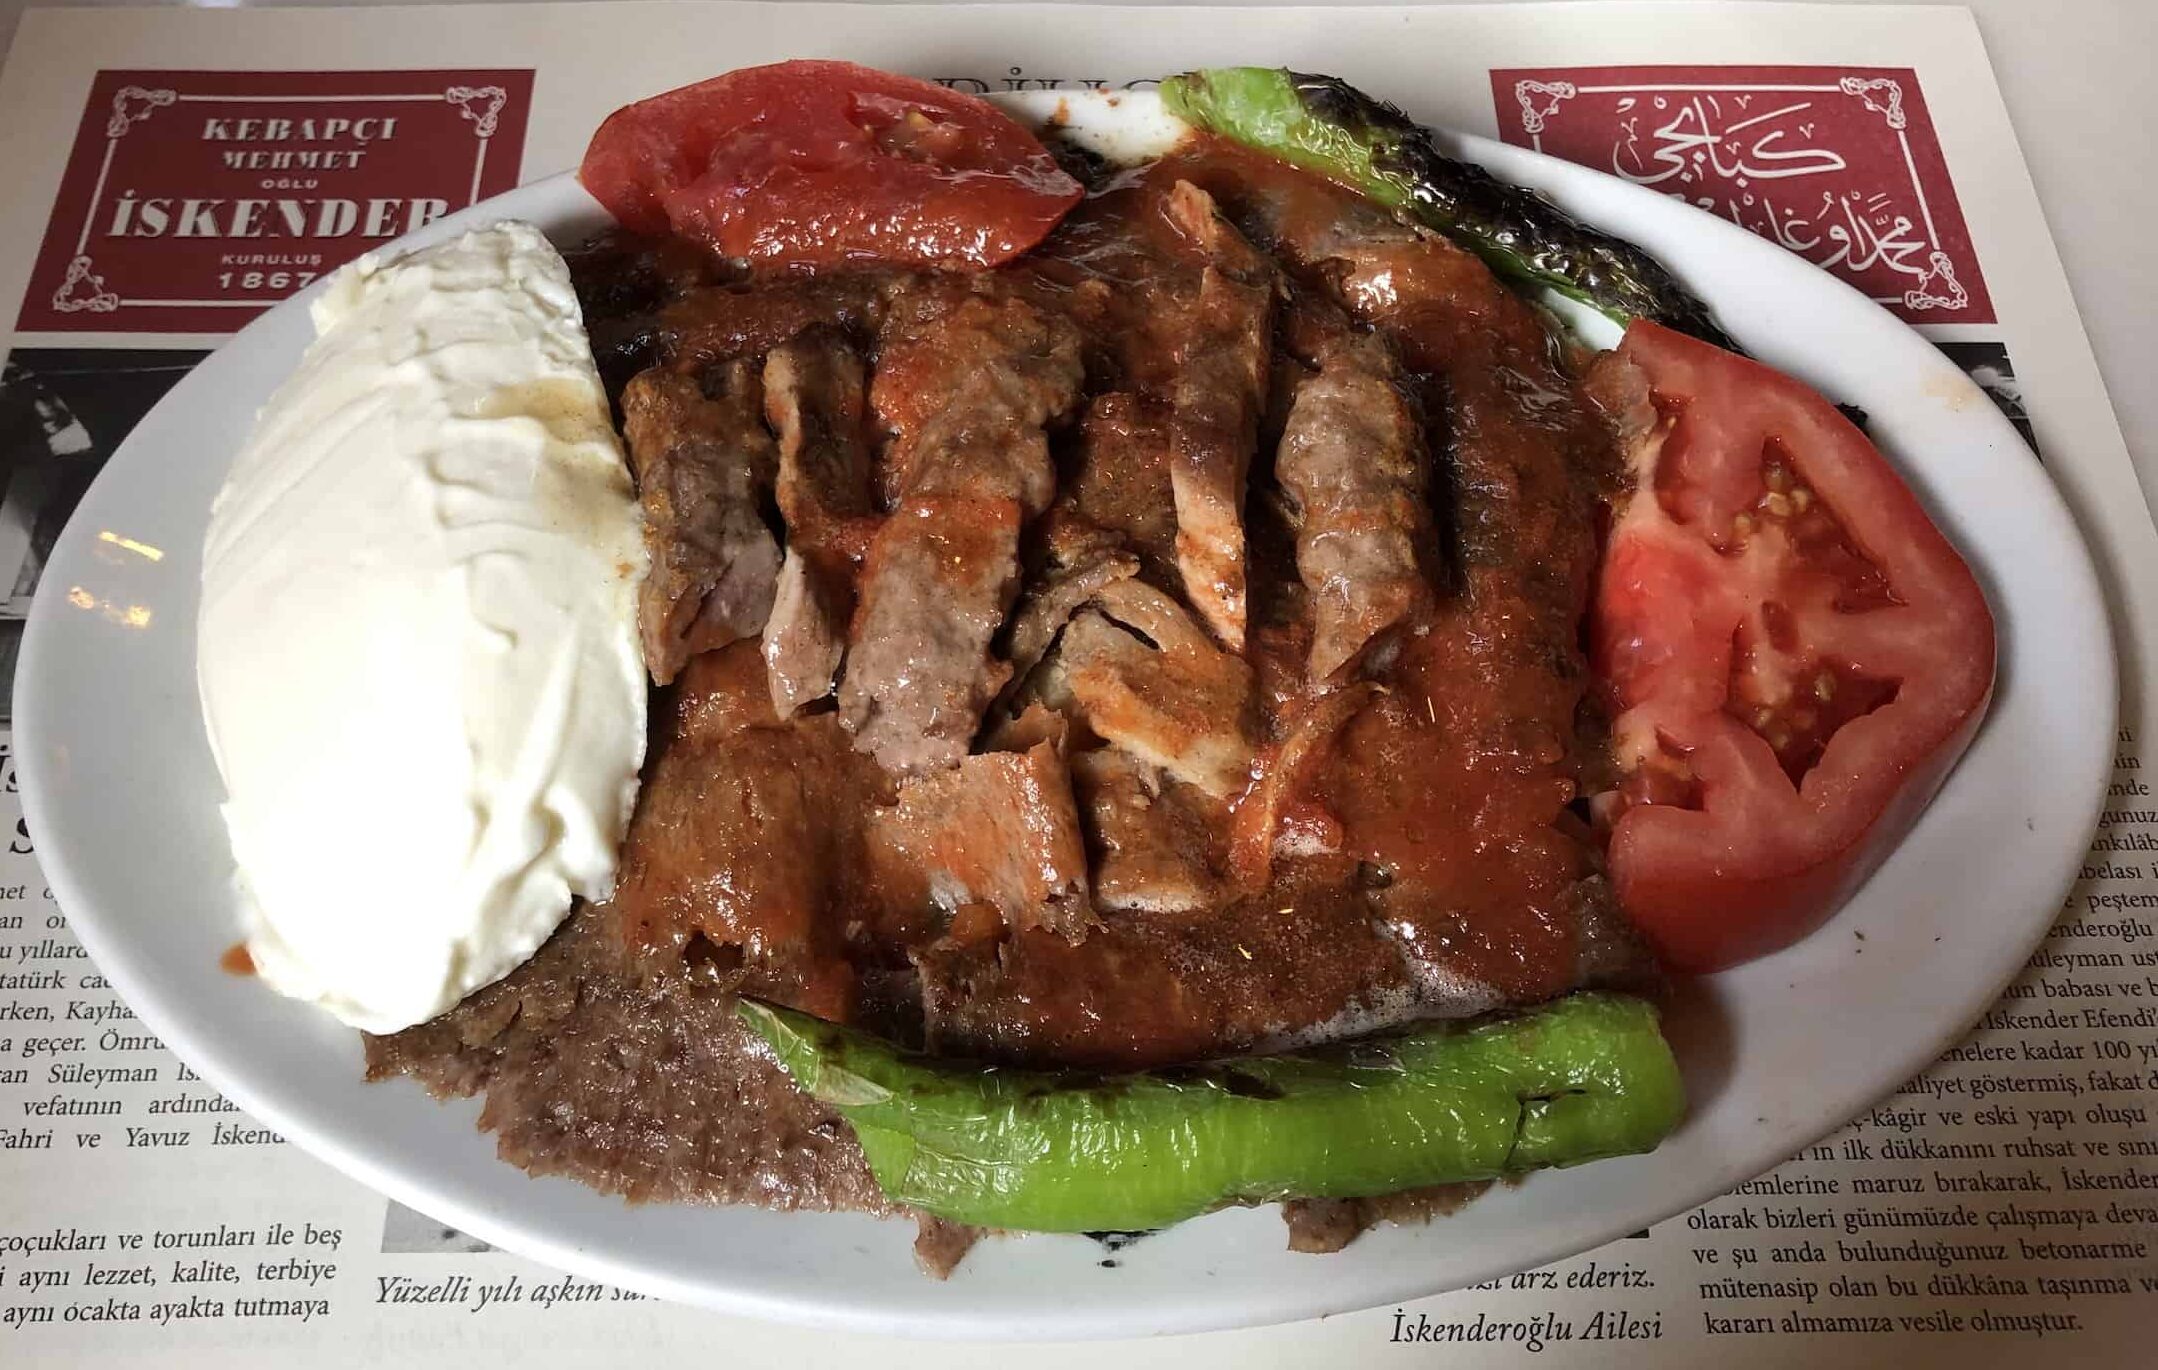 İskender kebab at Kebapçı İskender in Bursa, Turkey